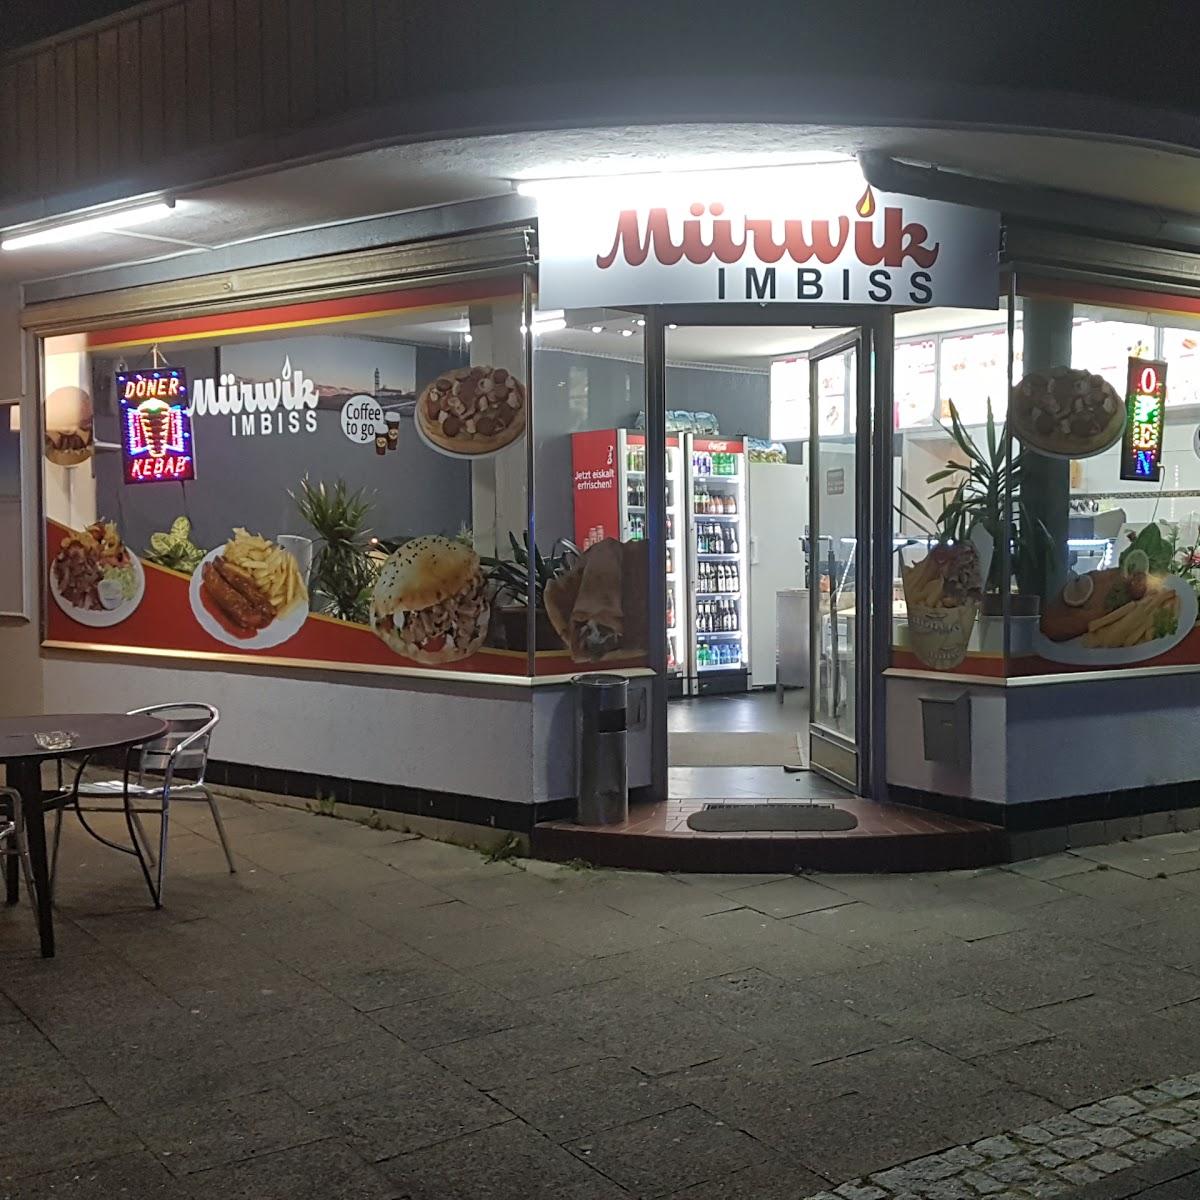 Restaurant "Mürwik imbiss" in Flensburg